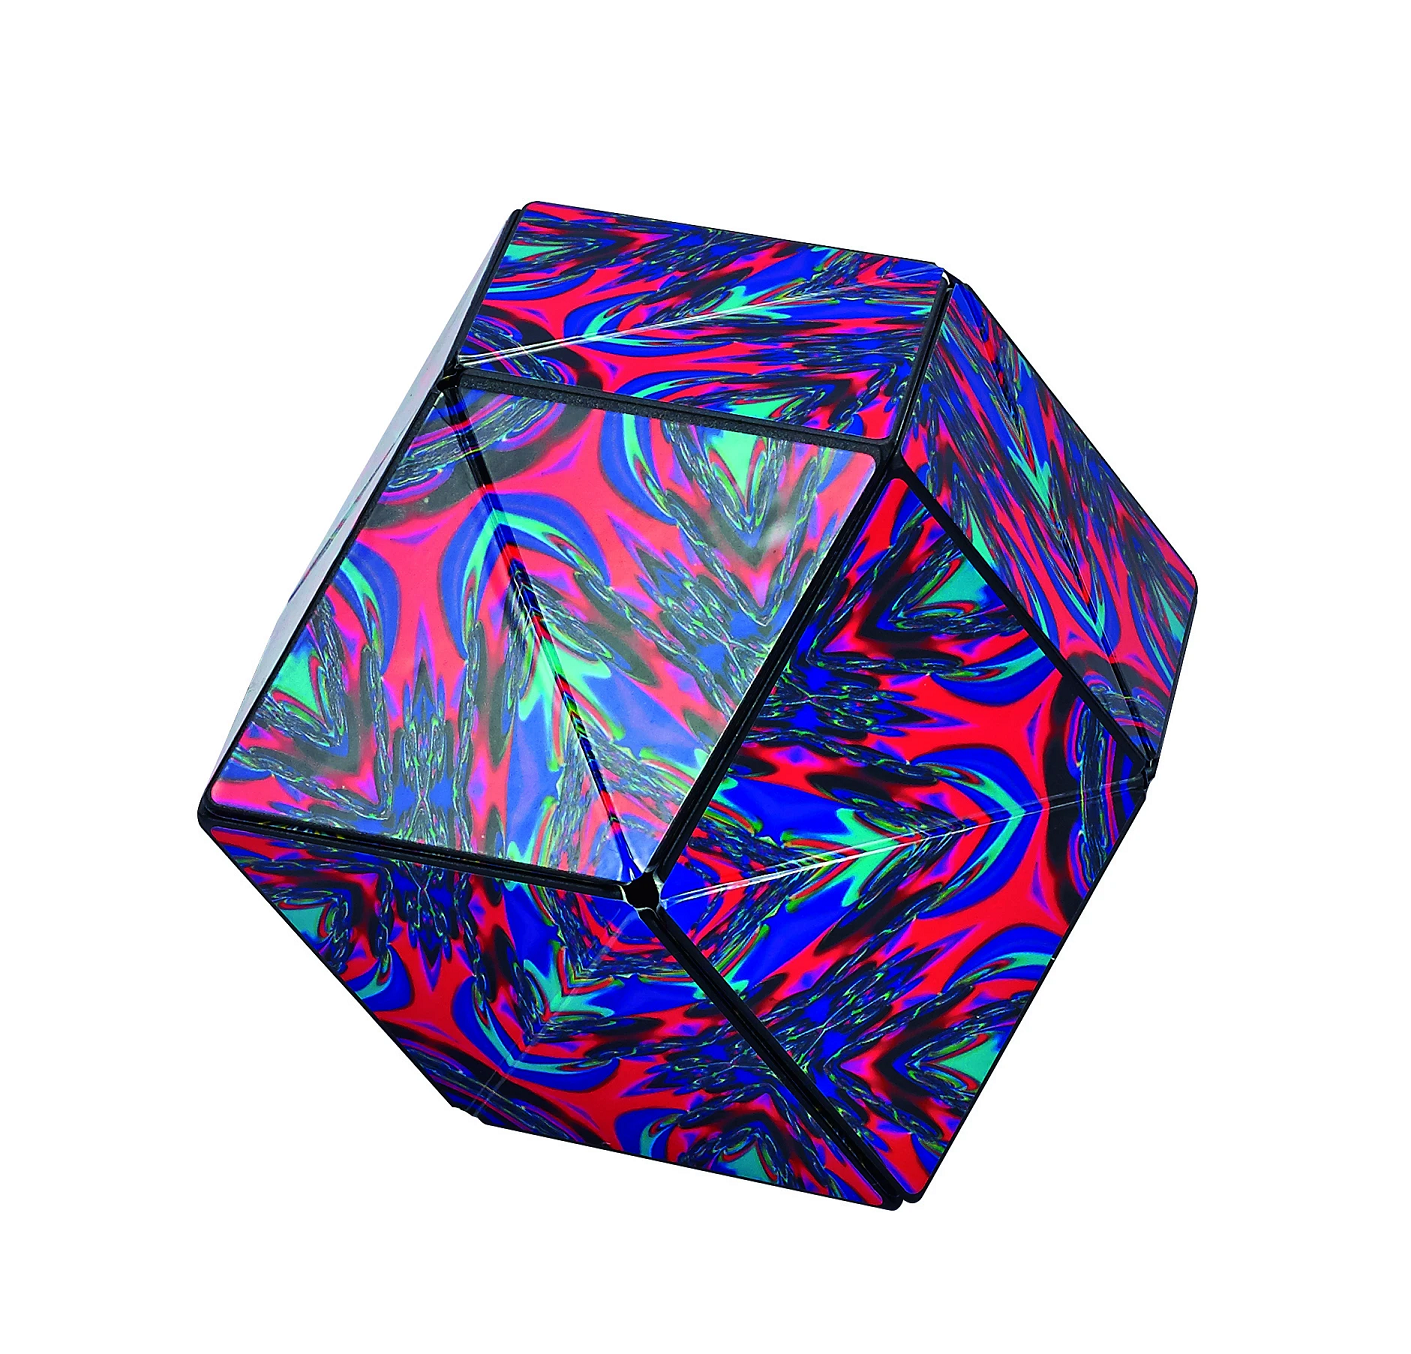 Shashibo Chaos Magnetic Puzzle Cube